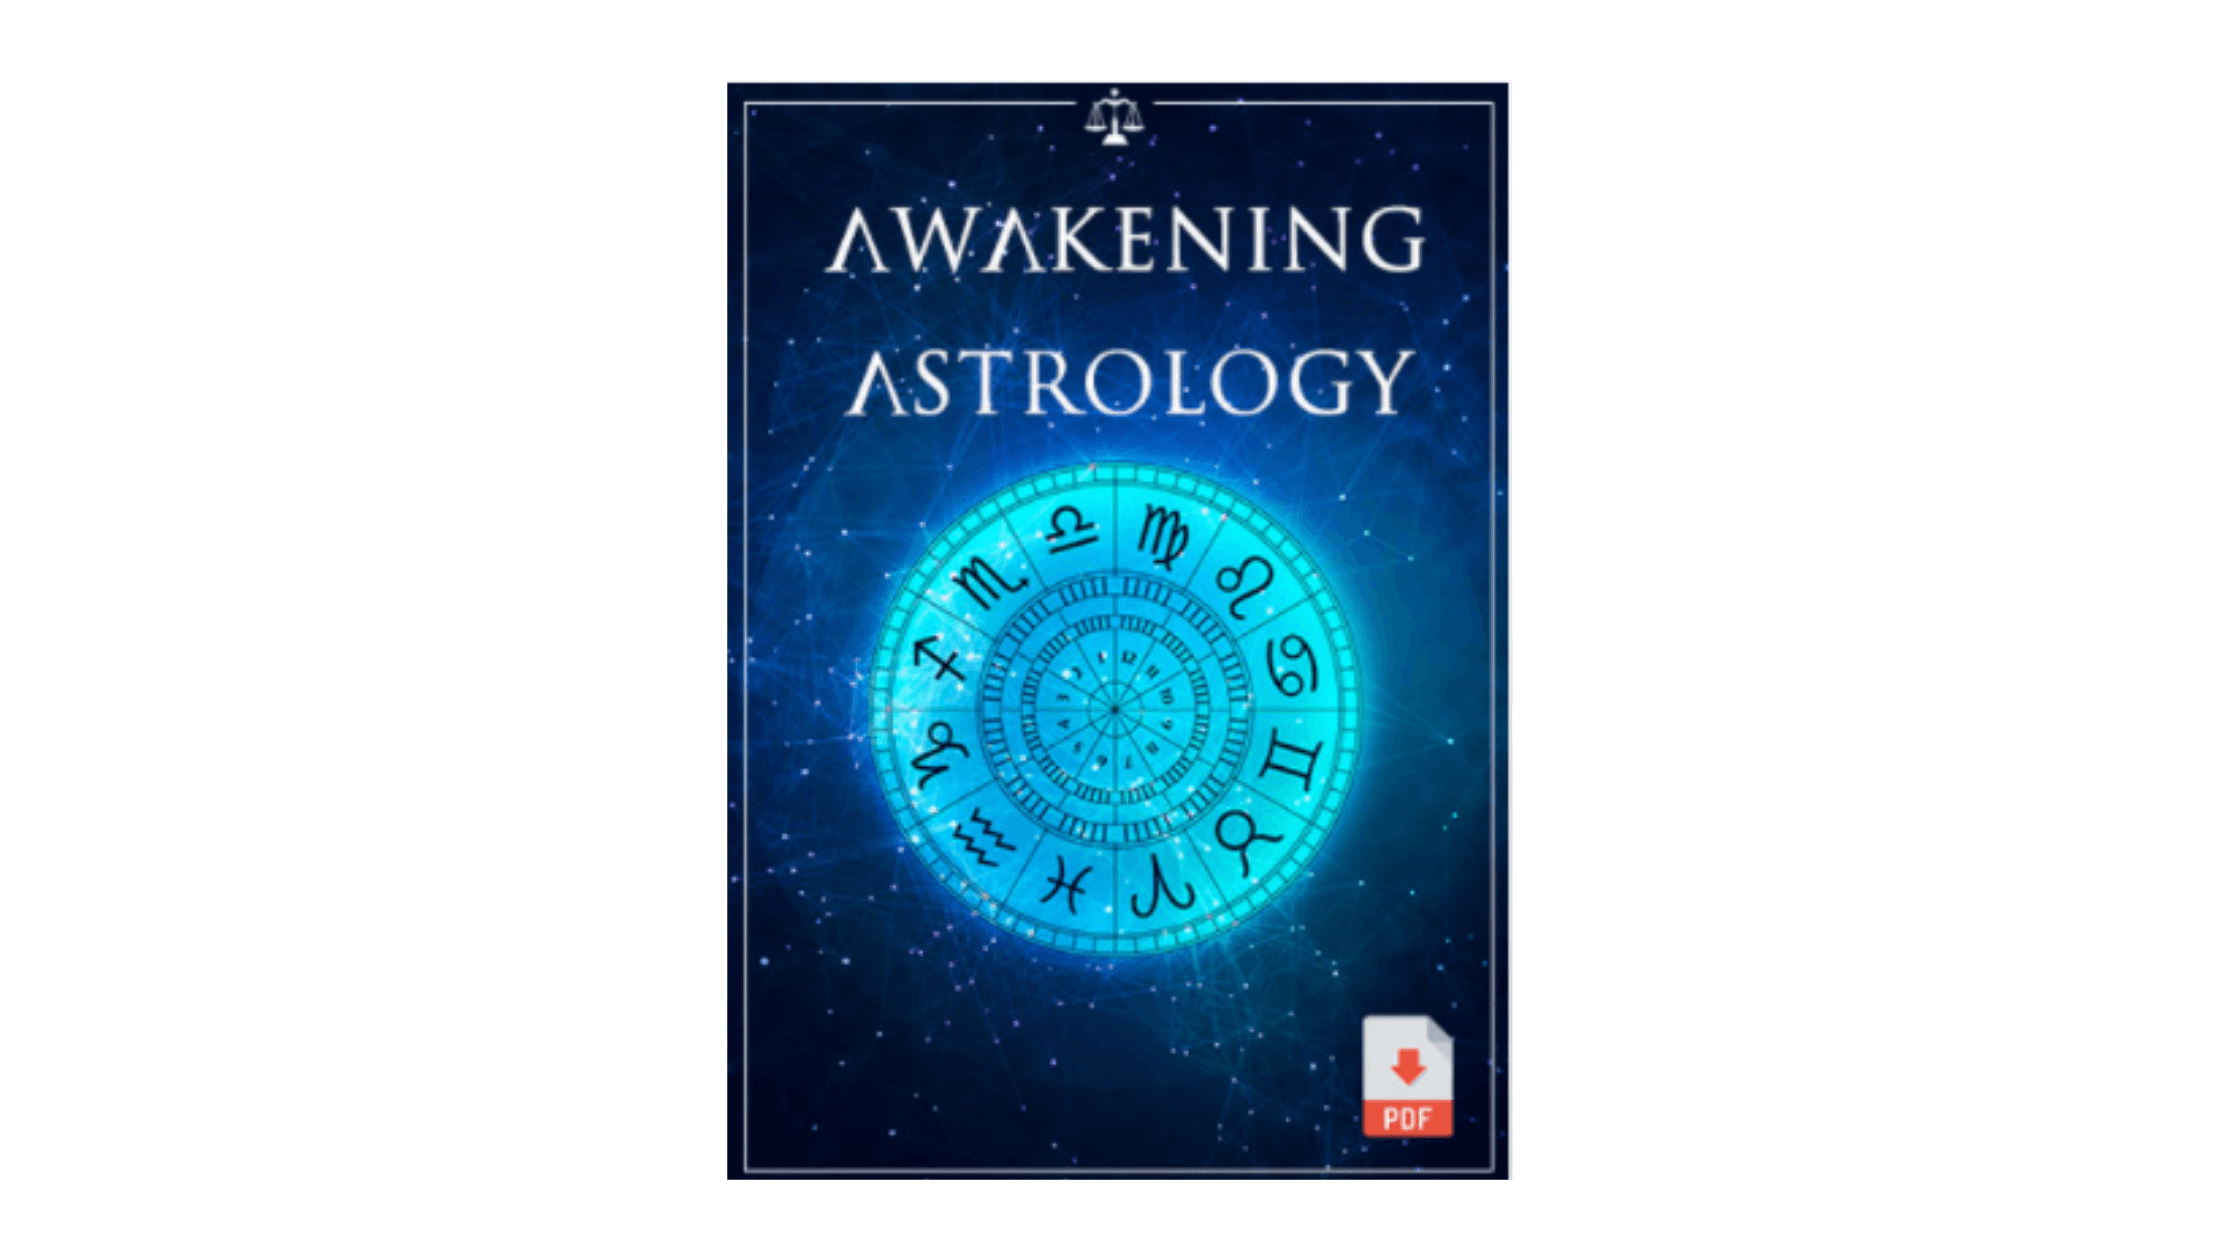 Awakening-Astrology-Reviews